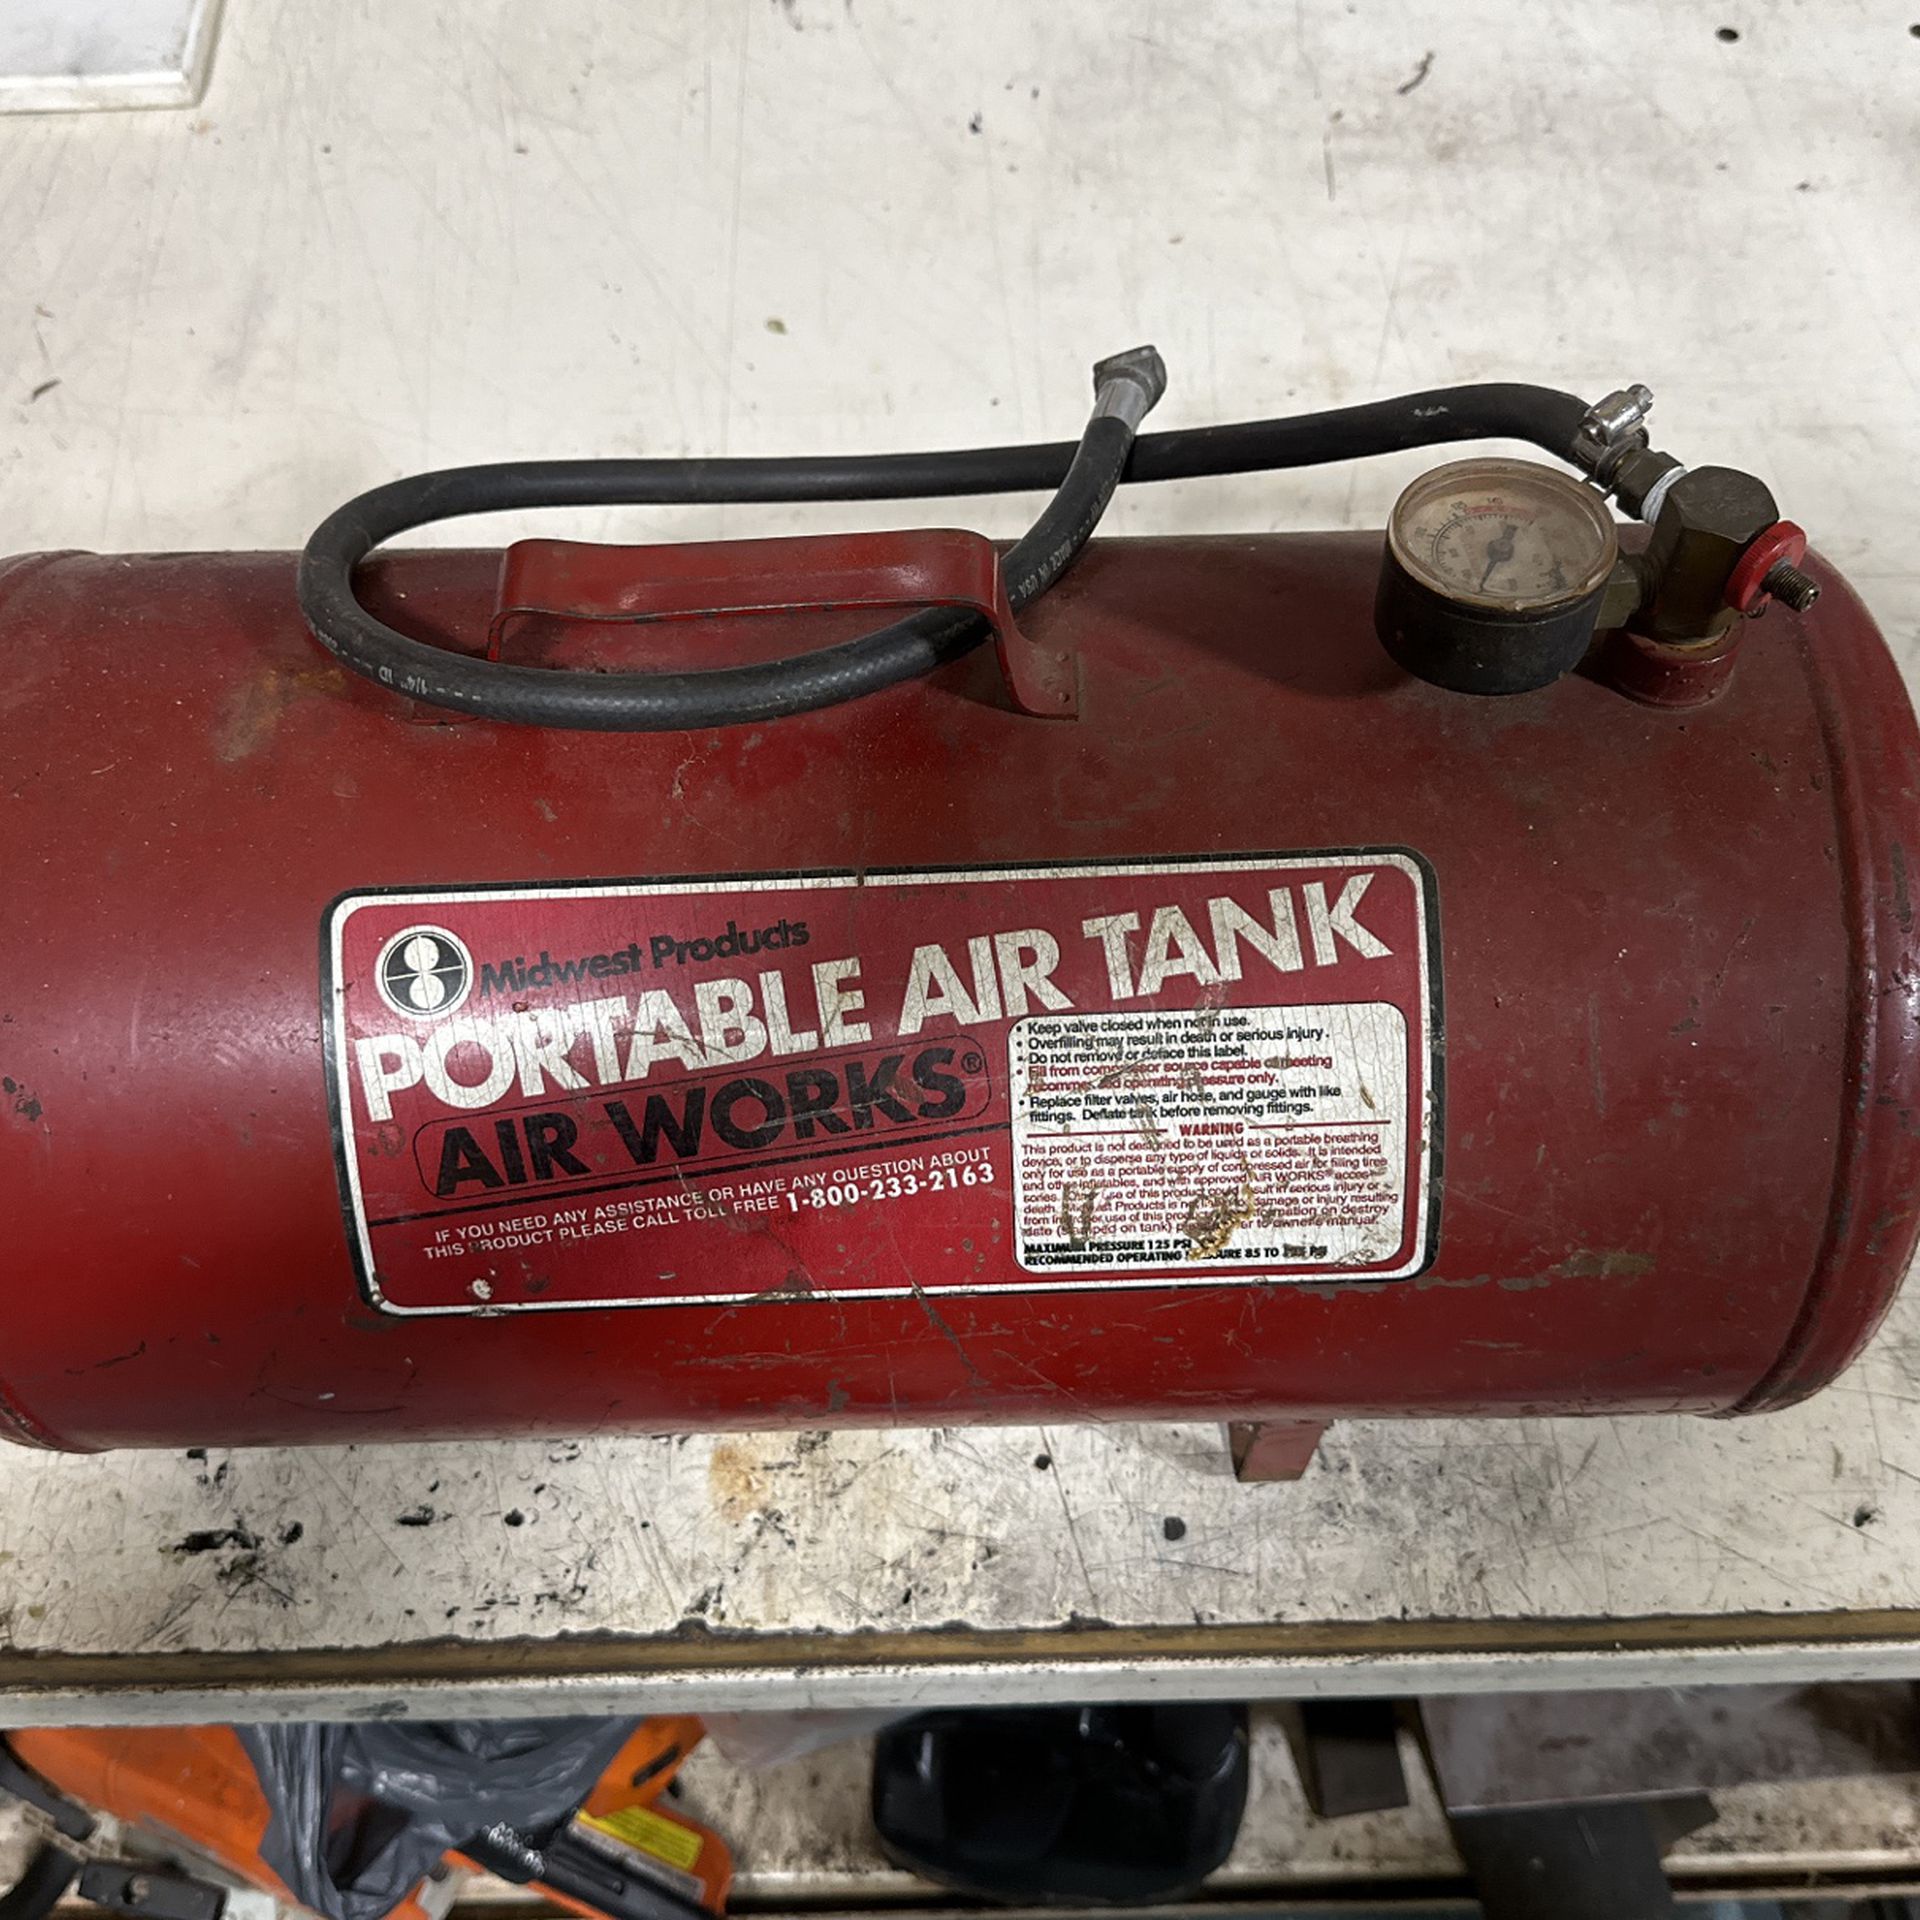 Air tank